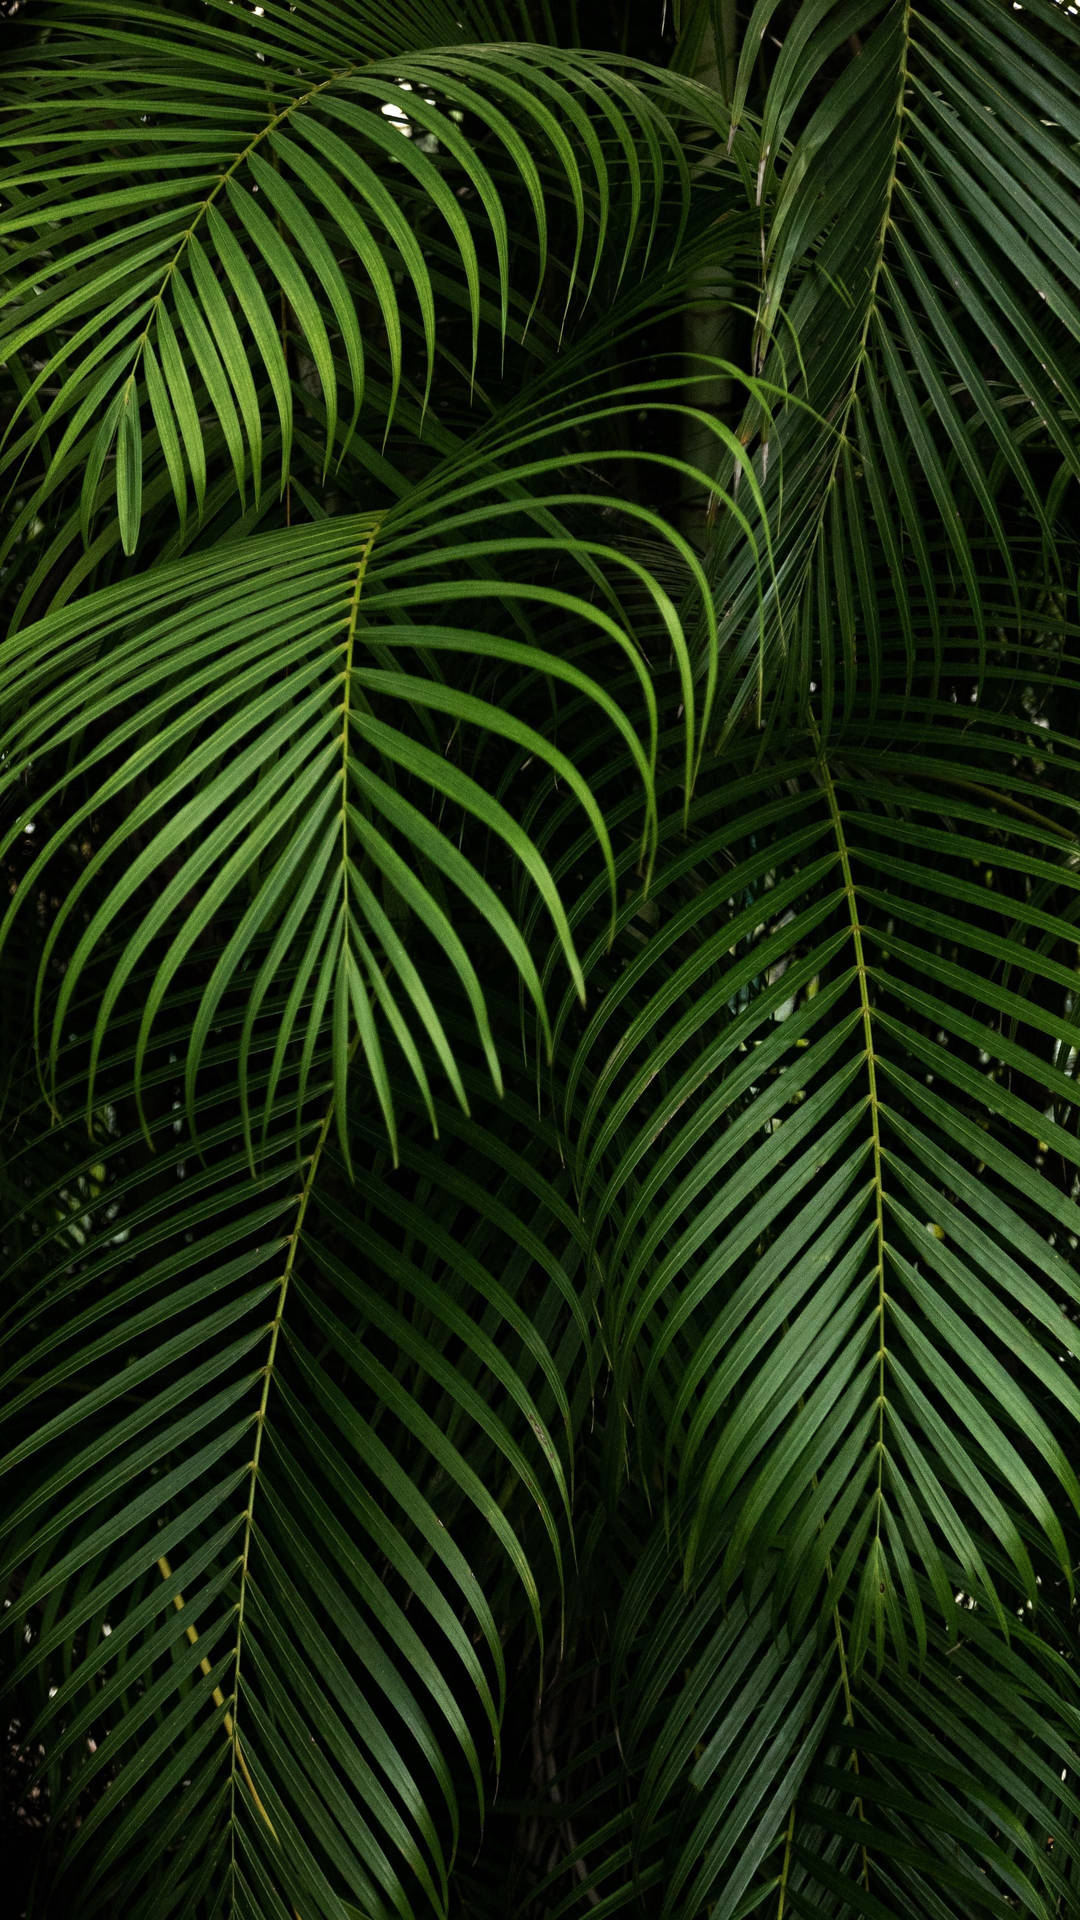 Hojapuntiaguda De Color Verde Oscuro De Las Plantas De Palma. Fondo de pantalla